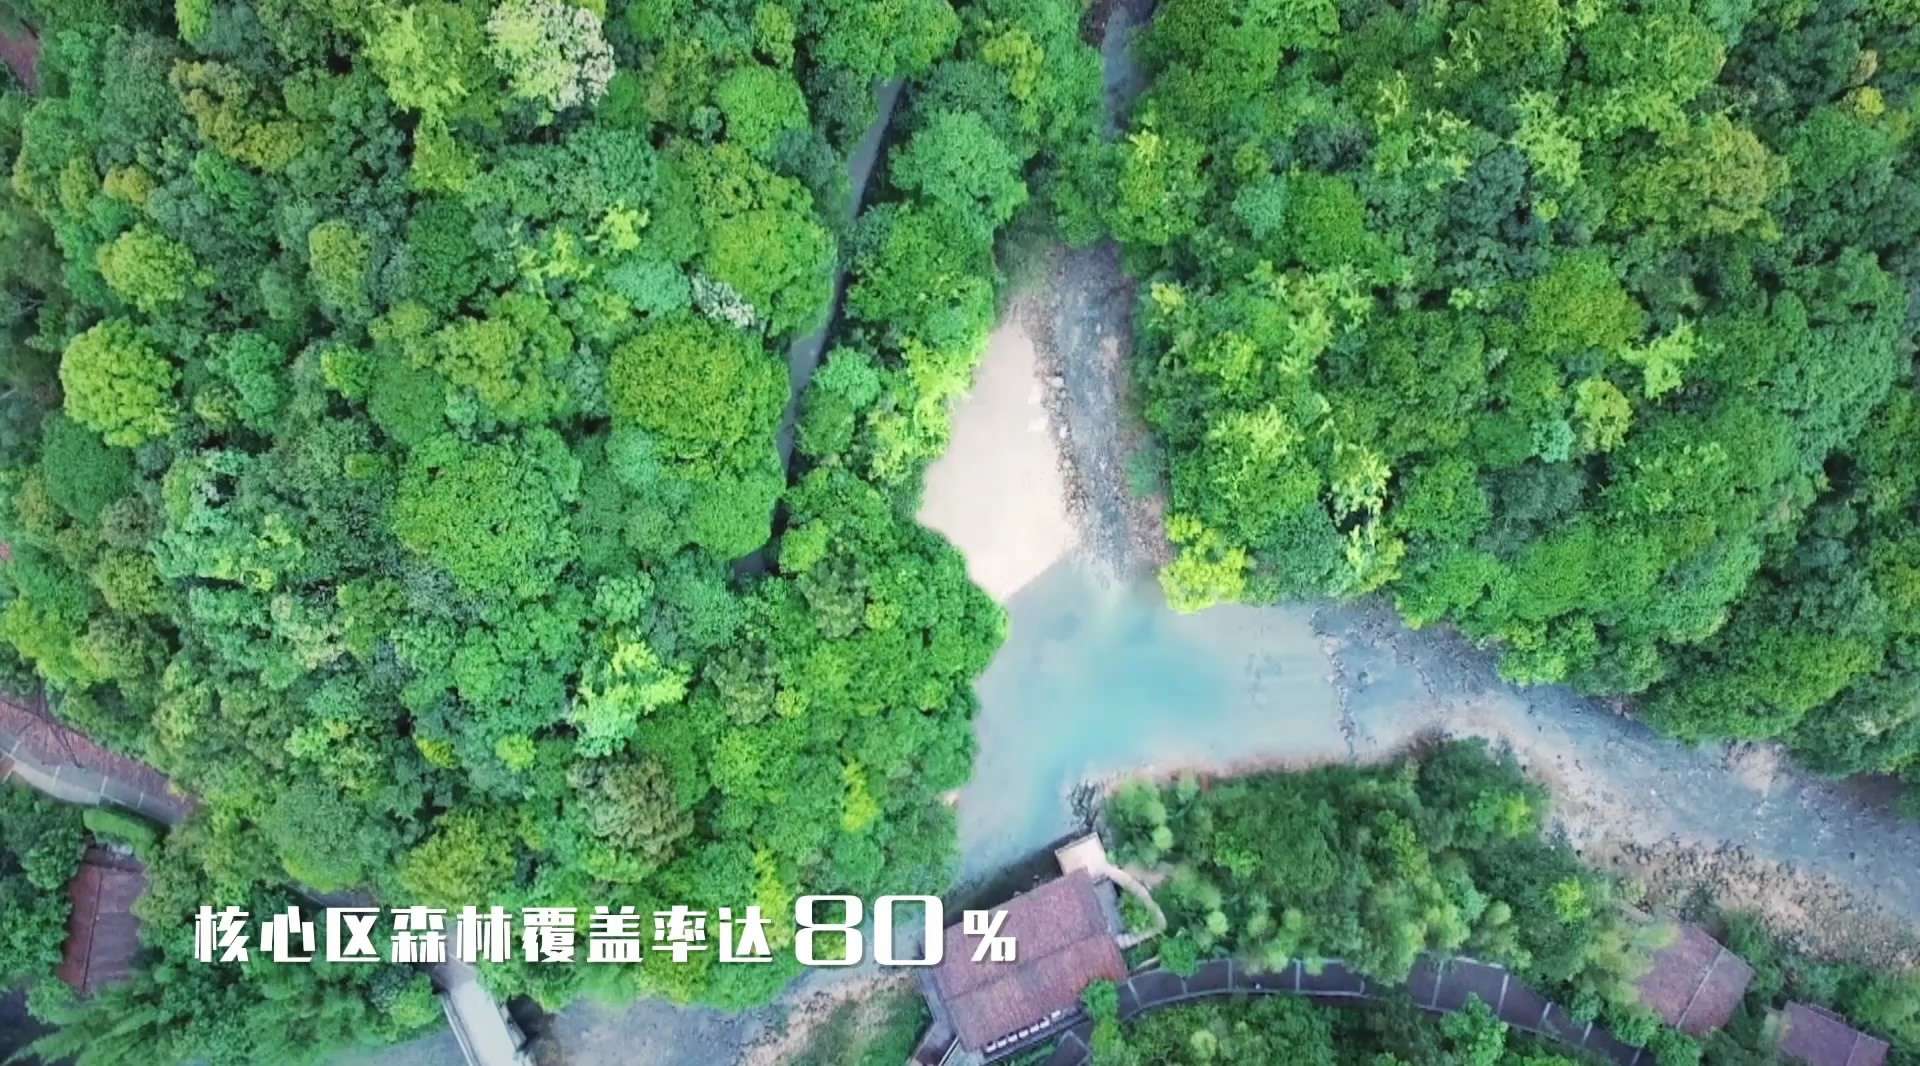 鄢陵城市形象宣传片